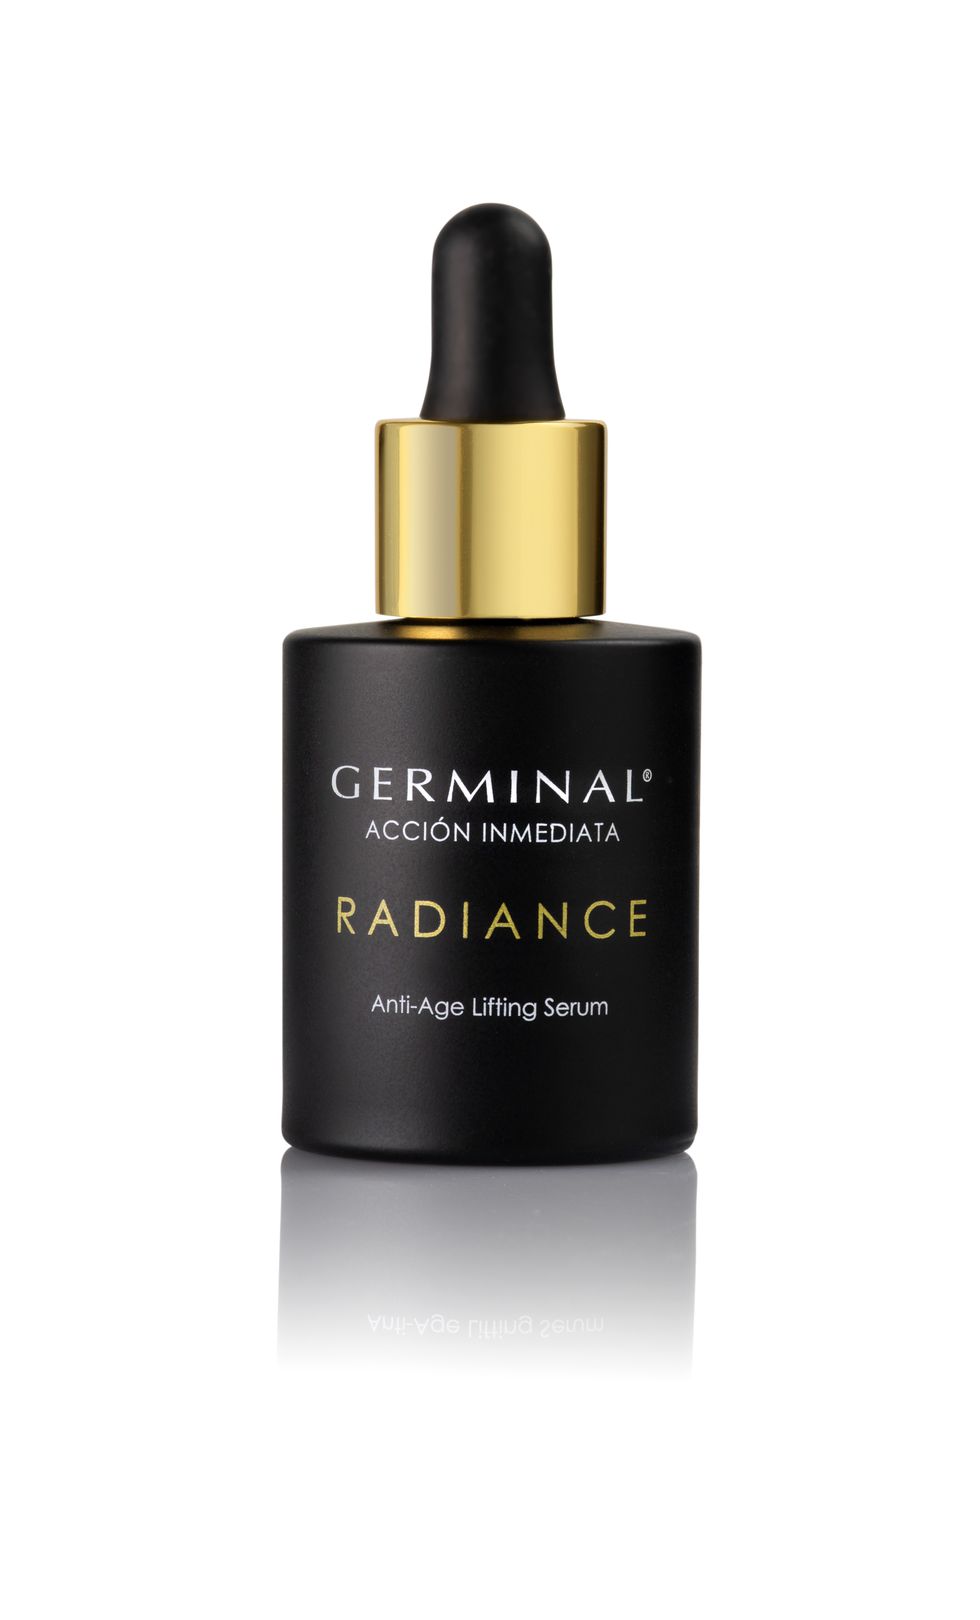 radiance antiage lifting serum, de germinal